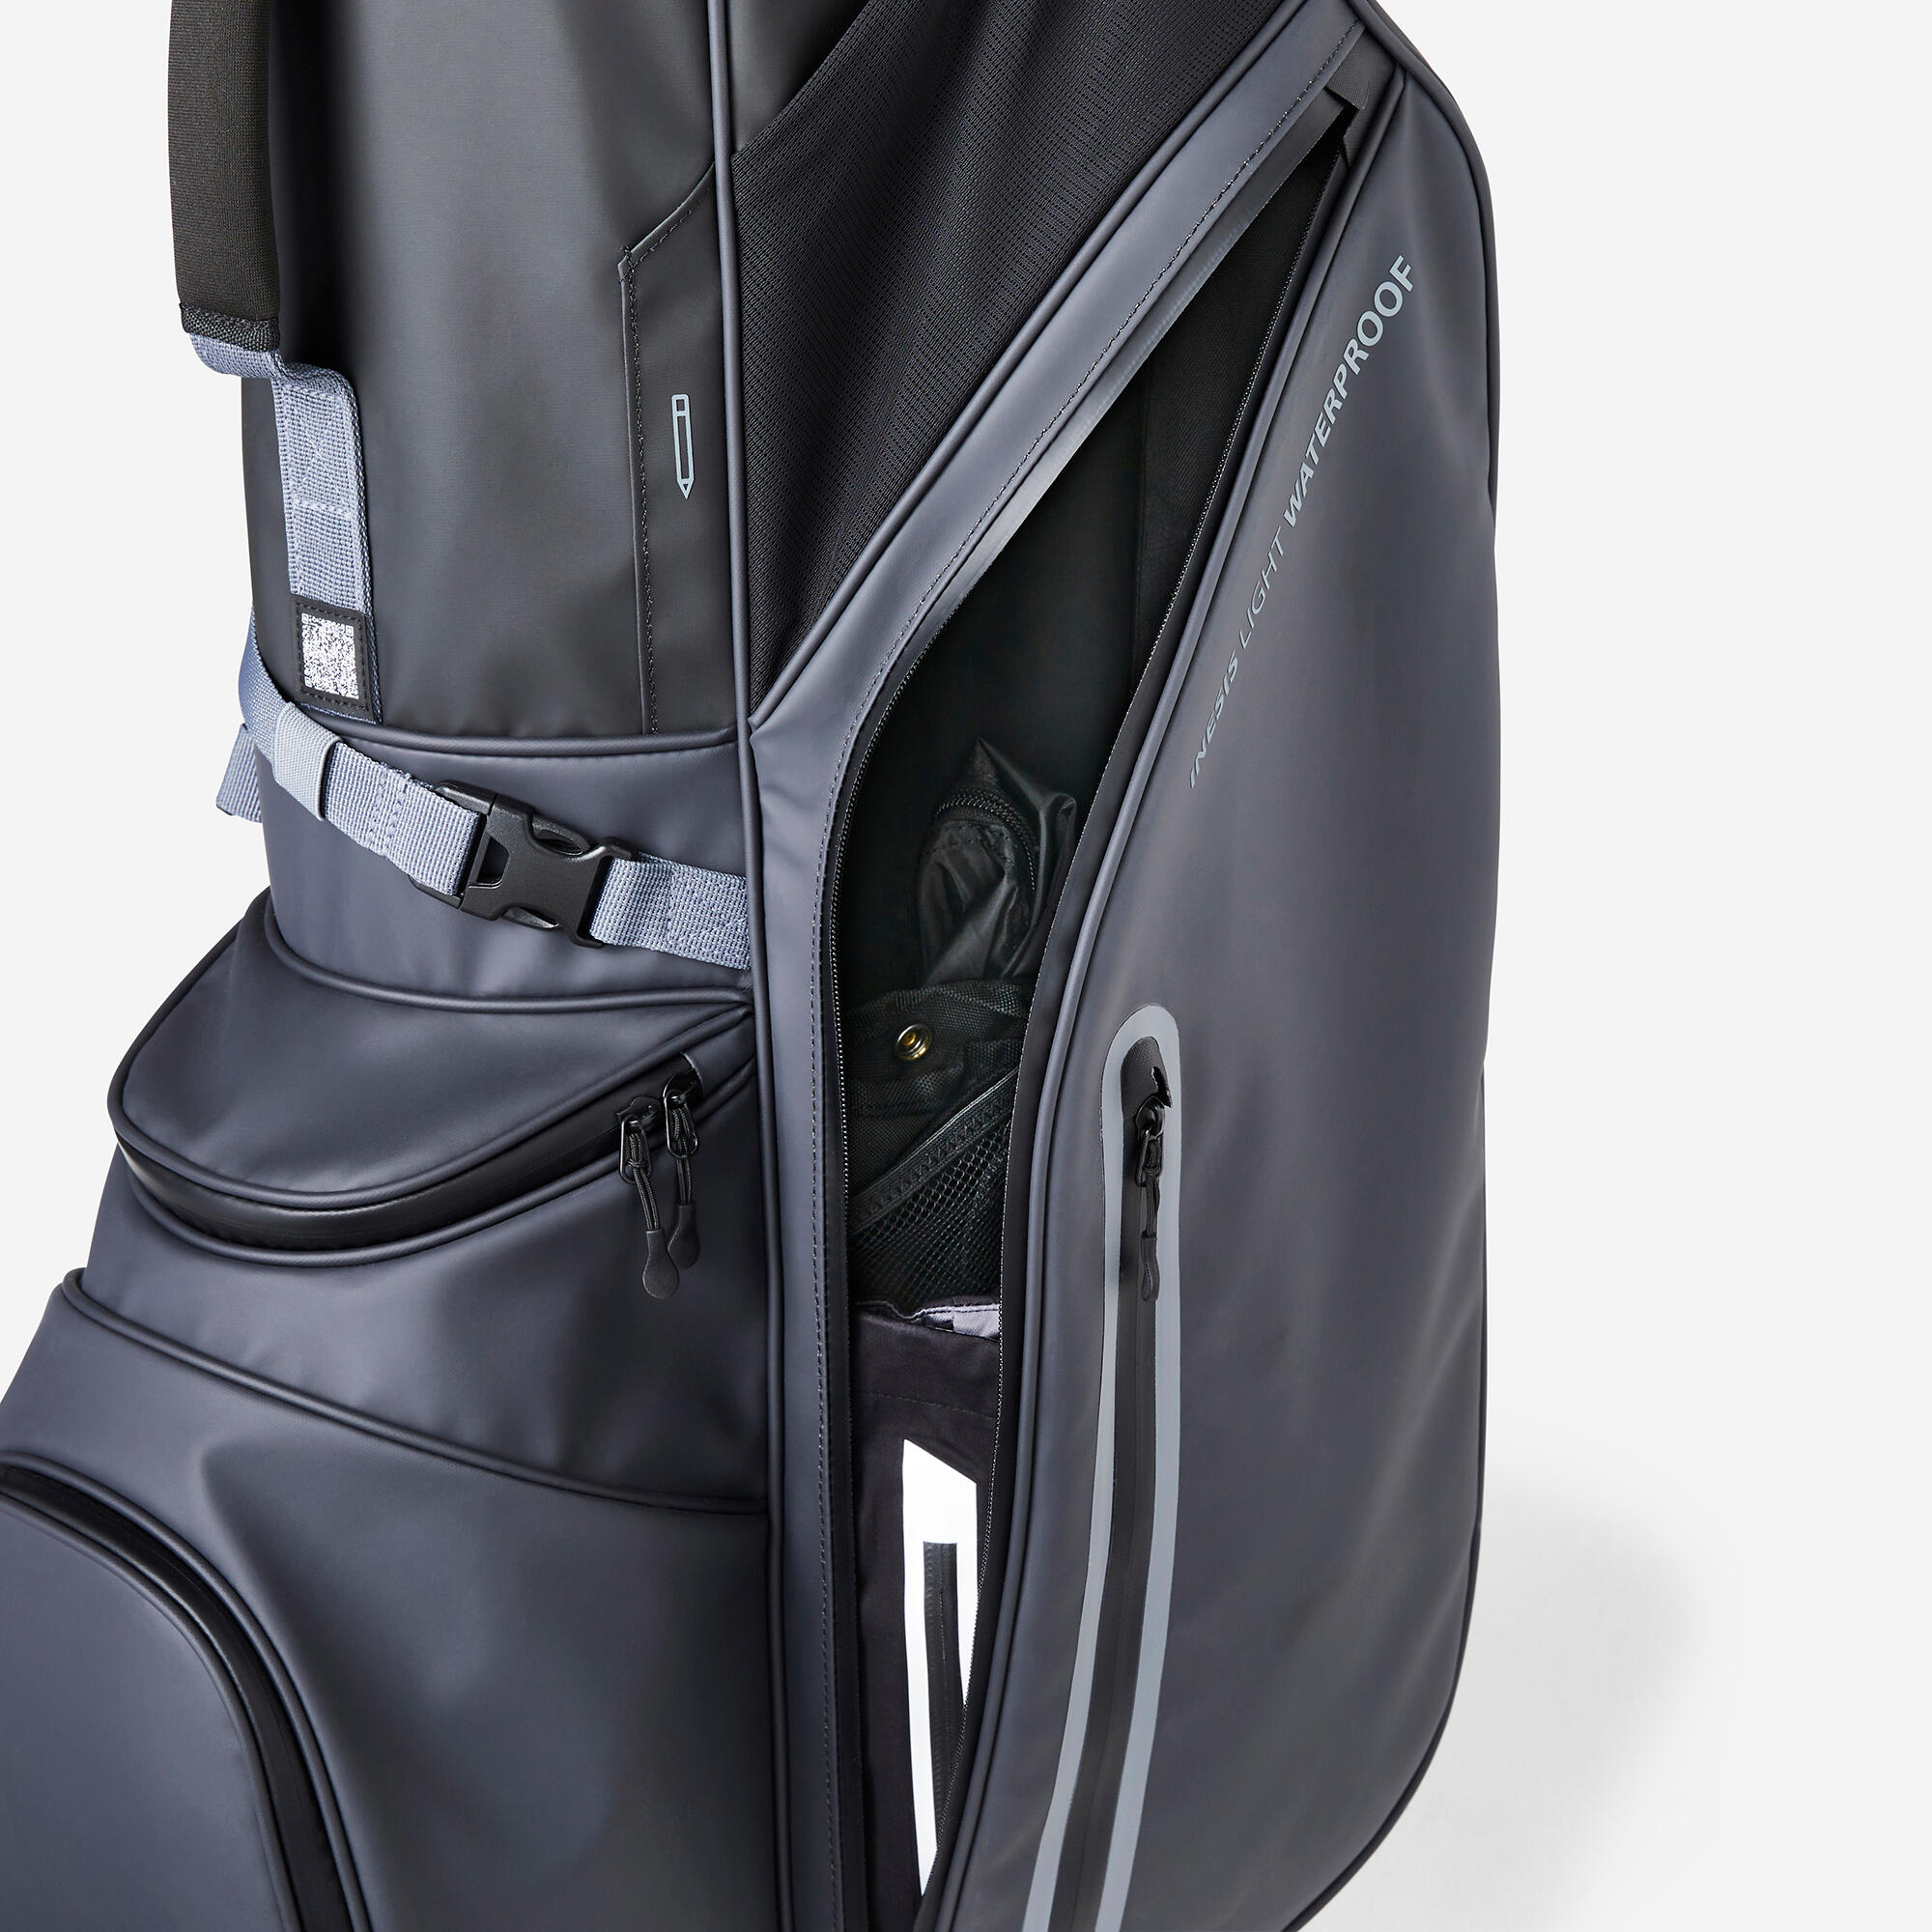 Waterproof golf stand bag - INESIS Light grey 4/11